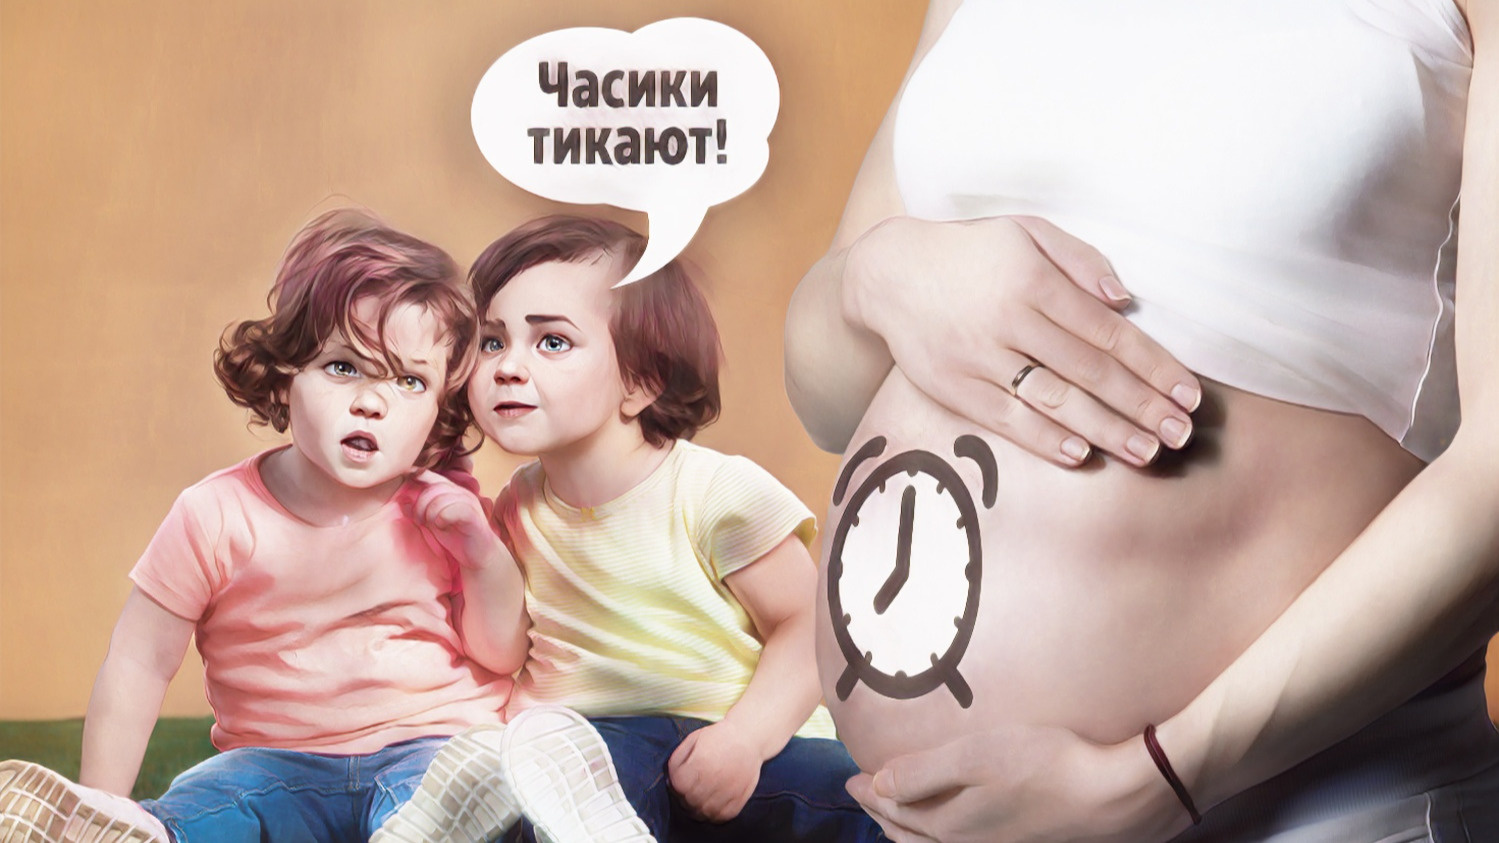 Сколько хранятся эмбрионы? Правда, что дети родятся больными? Репродуктолог — о популярной в Тюмени программе ЭКО